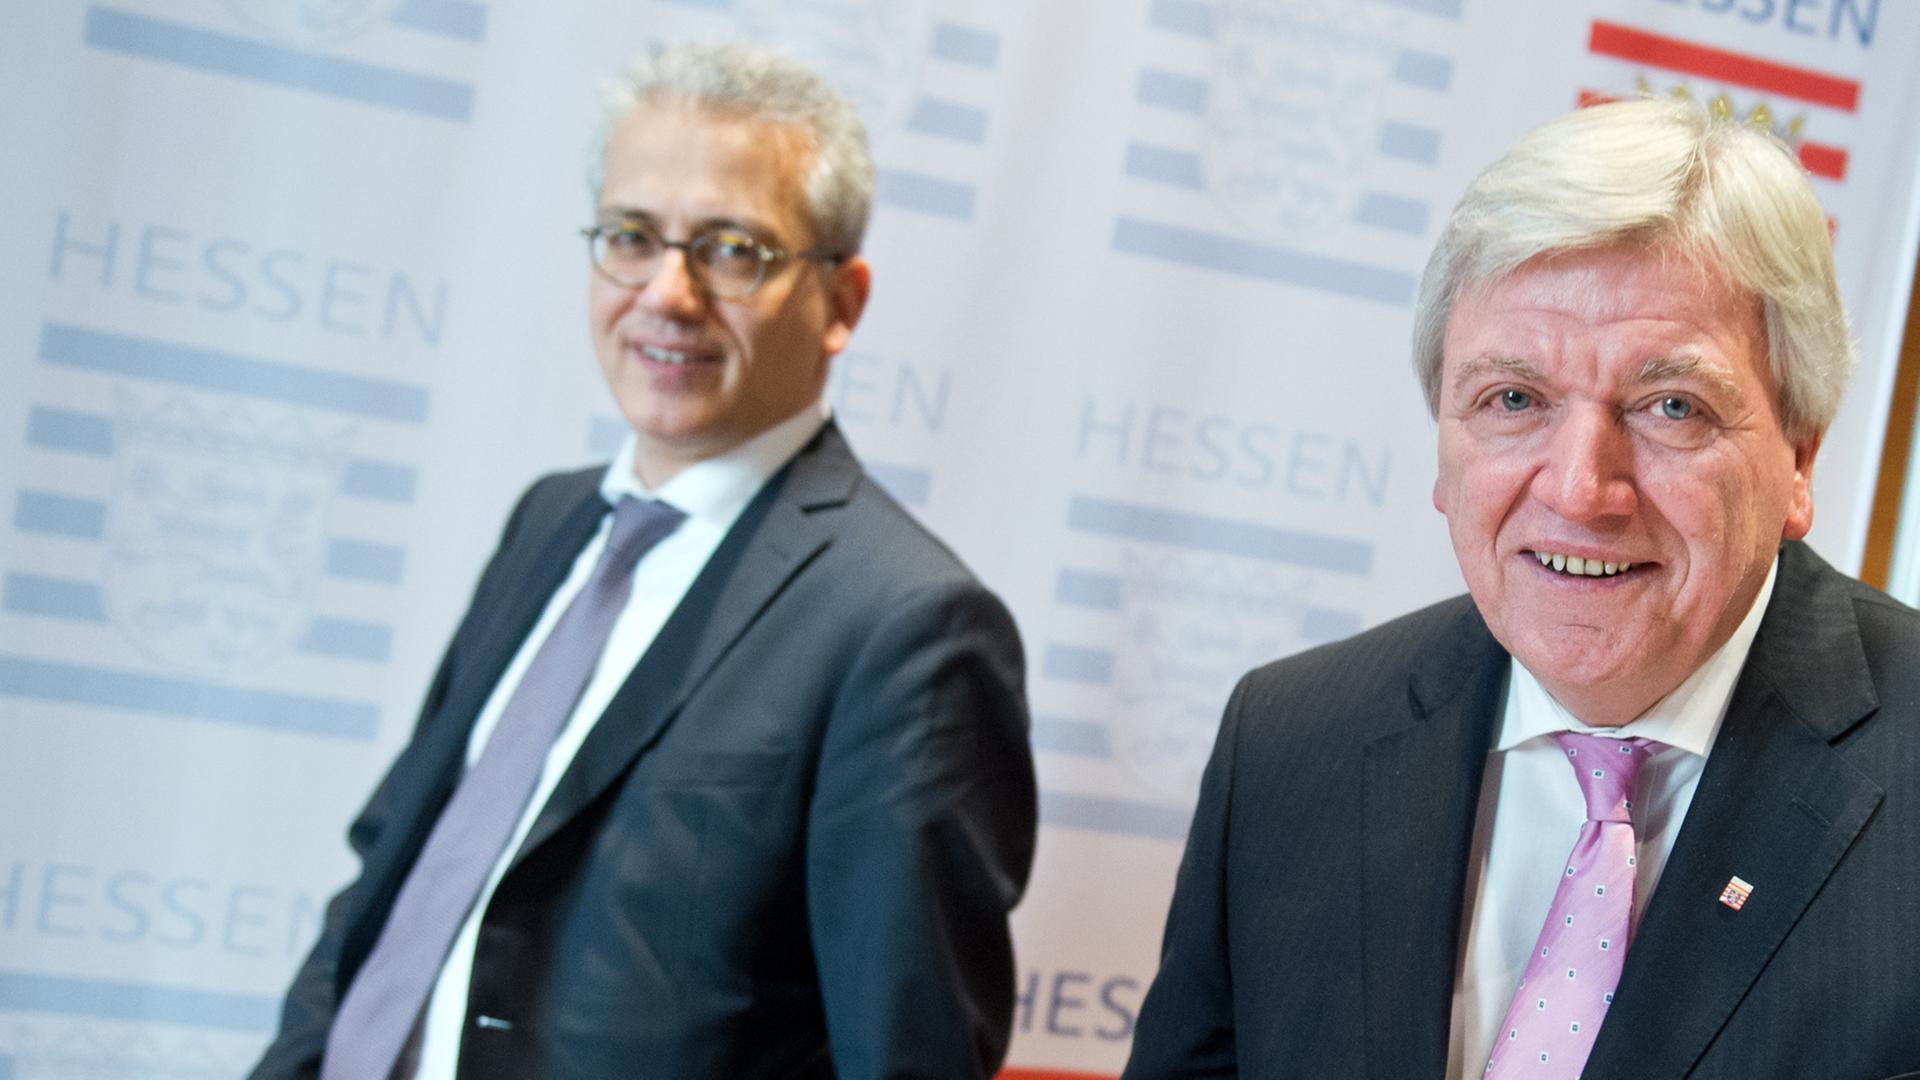 Ein Jahr nach dem Start der schwarz-grünen Koalition in Hessen ziehen Volker Bouffier (CDU) und Tarek Al-Wazir (Grüne) Bilanz